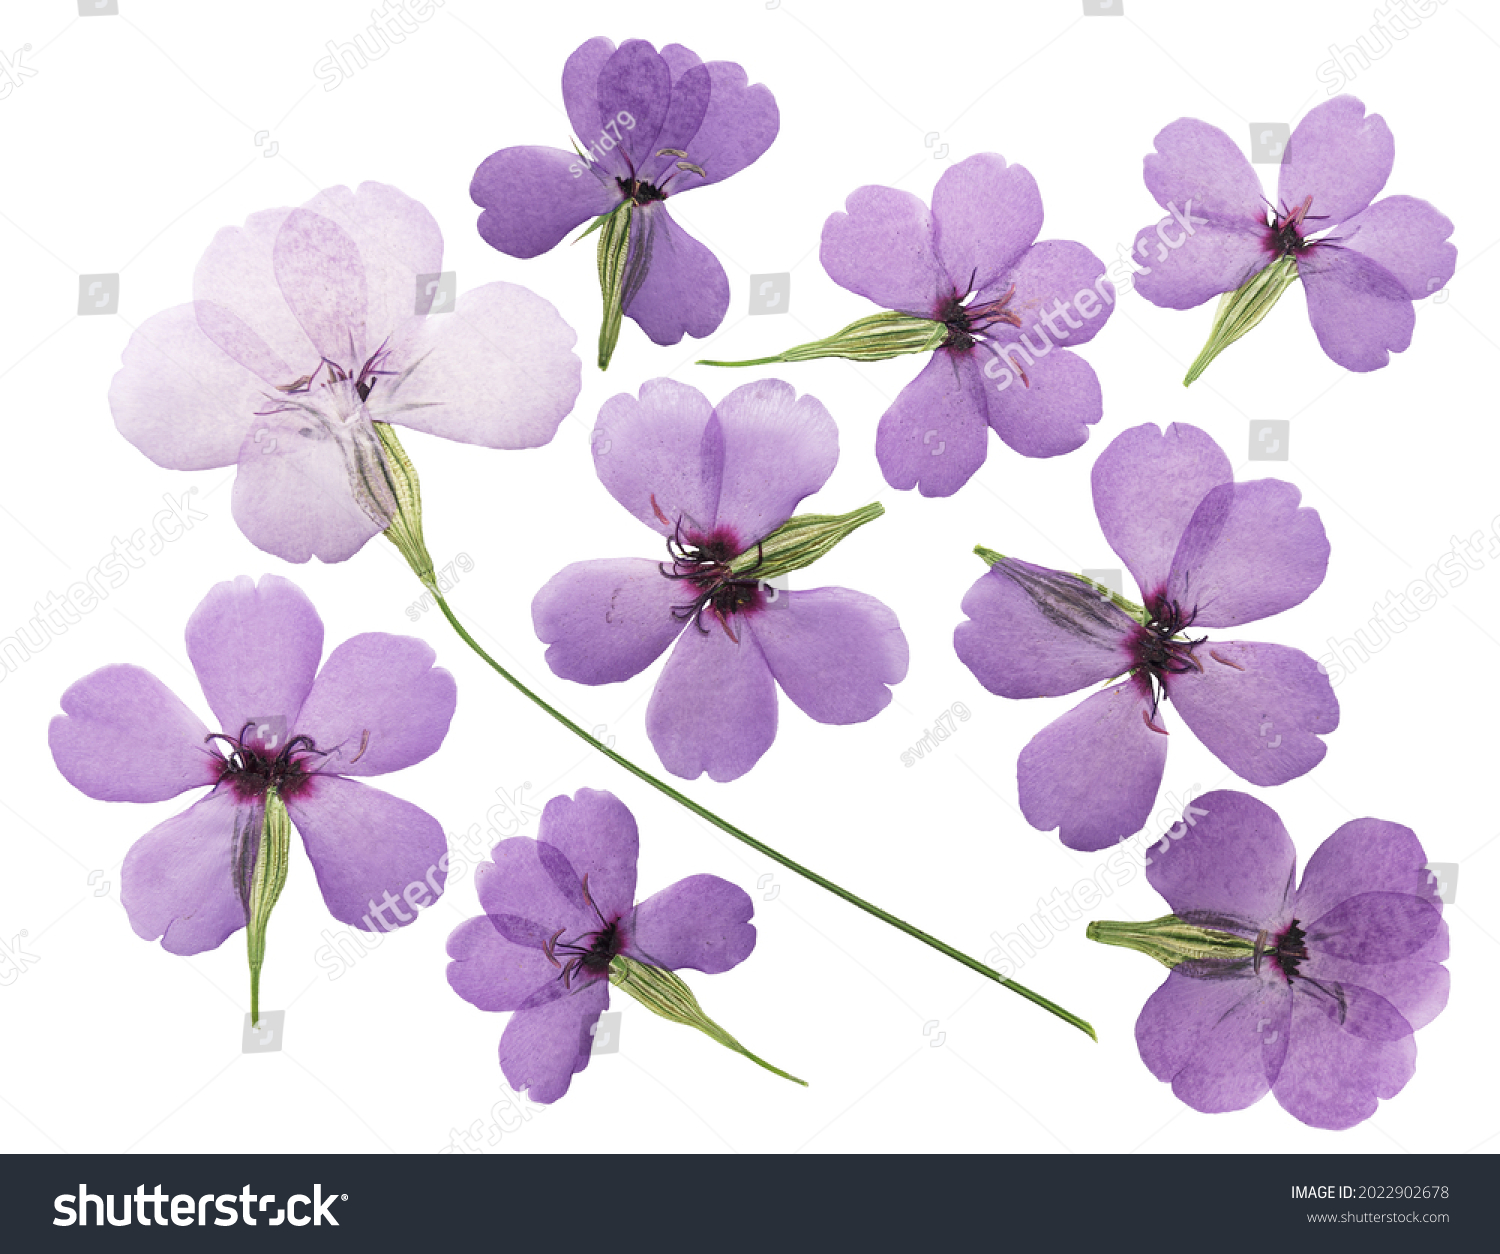 Real pressed flowers pressed phlox flowers purple pressed flowers